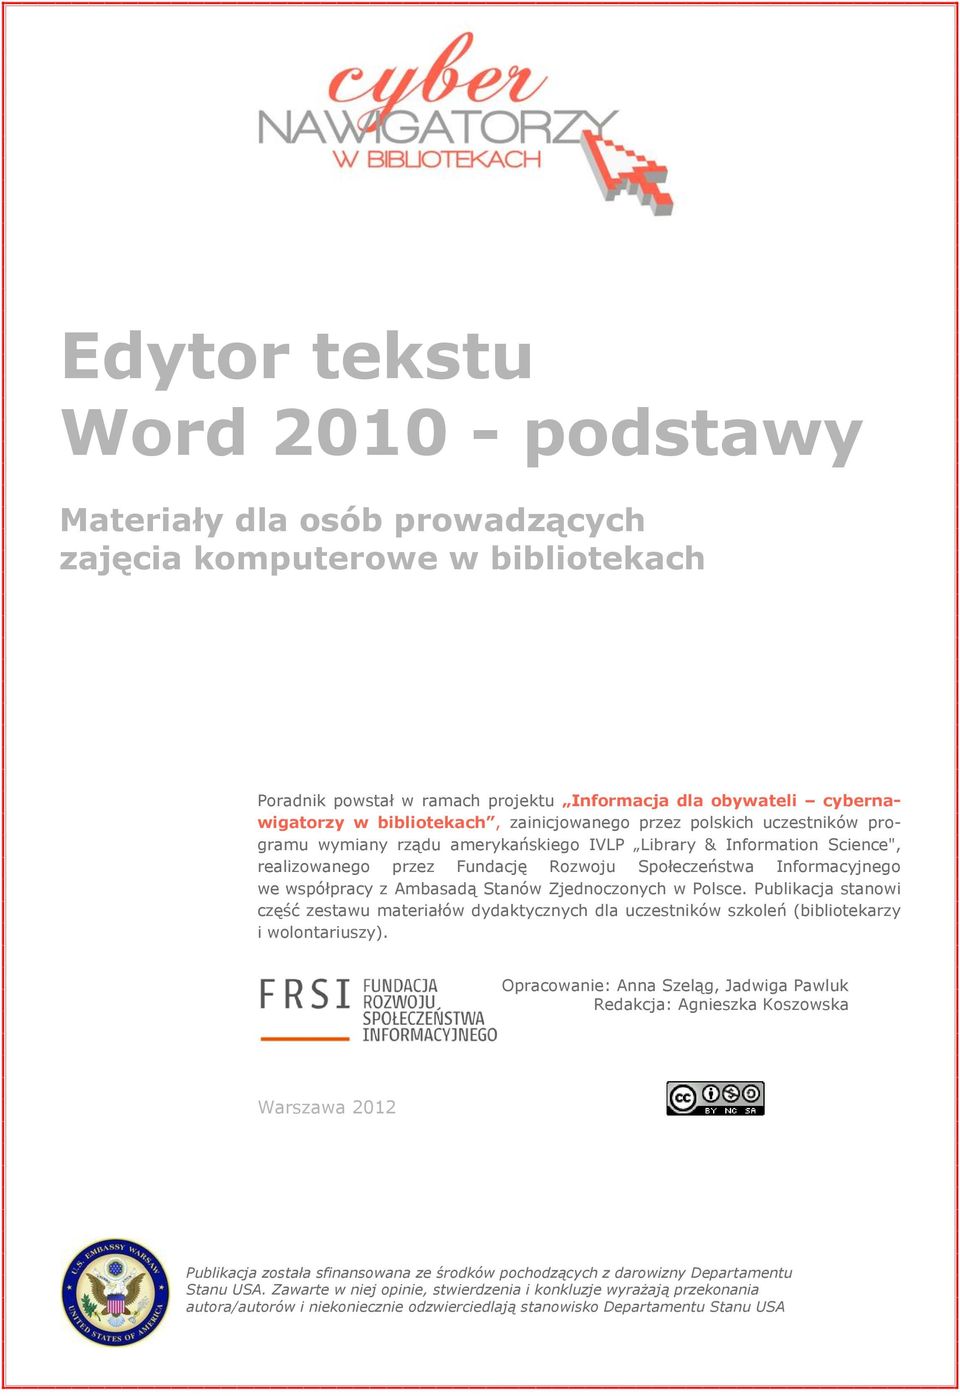 Ambasadą Stanów Zjednoczonych w Polsce. Publikacja stanowi część zestawu materiałów dydaktycznych dla uczestników szkoleń (bibliotekarzy i wolontariuszy).